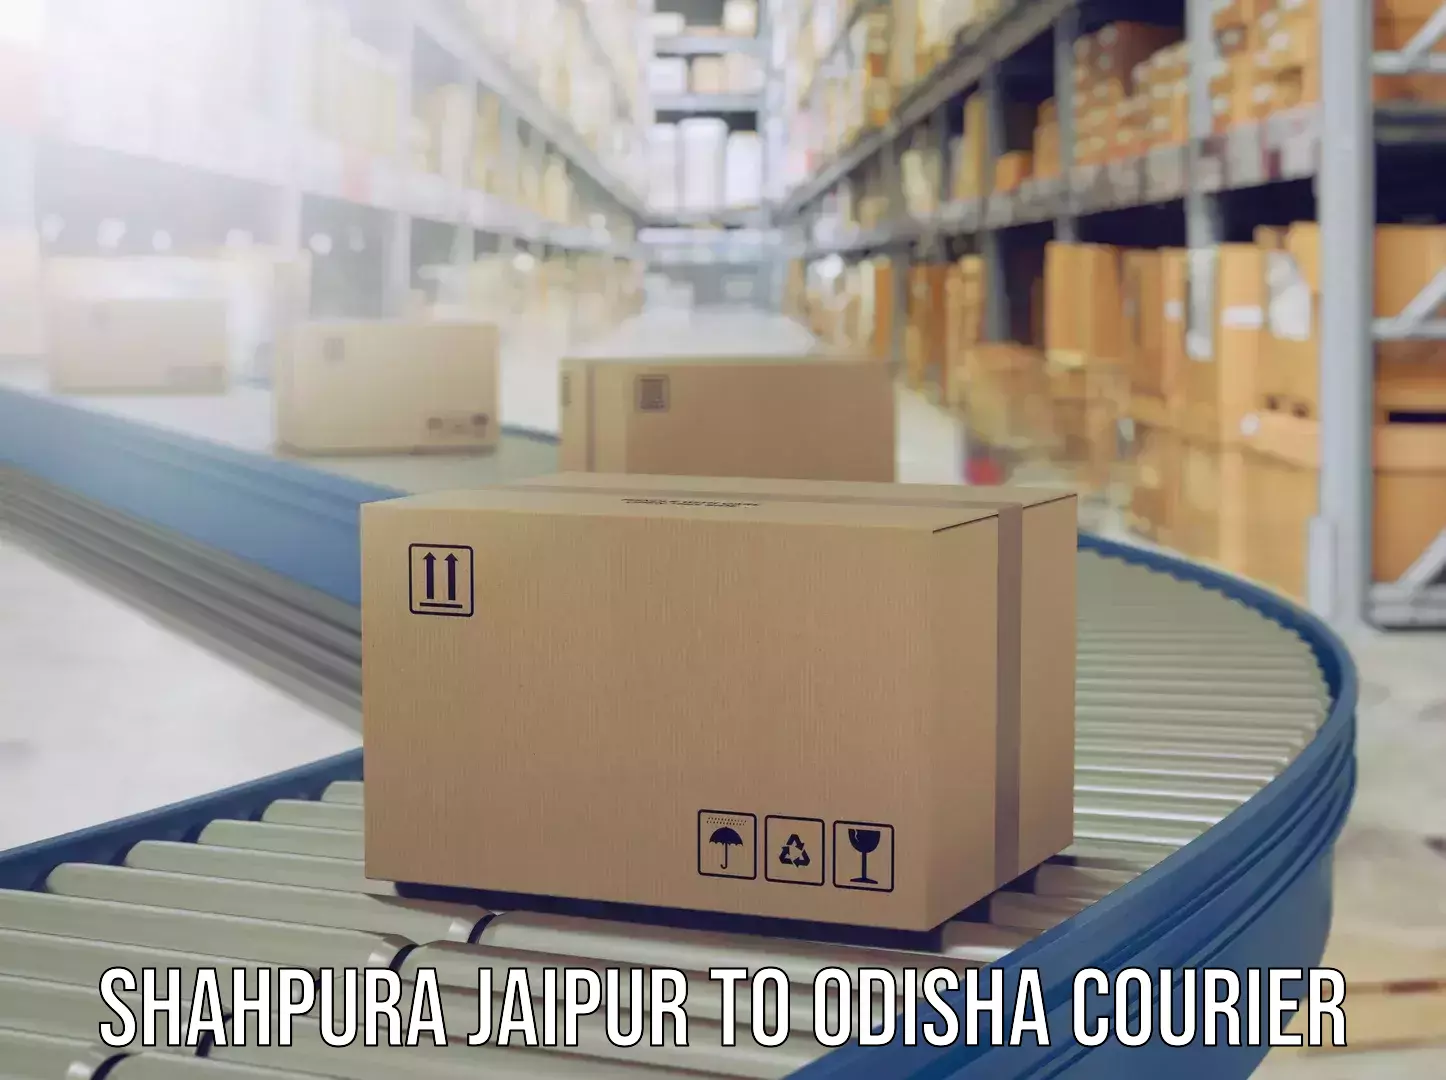 Digital baggage courier Shahpura Jaipur to Odisha